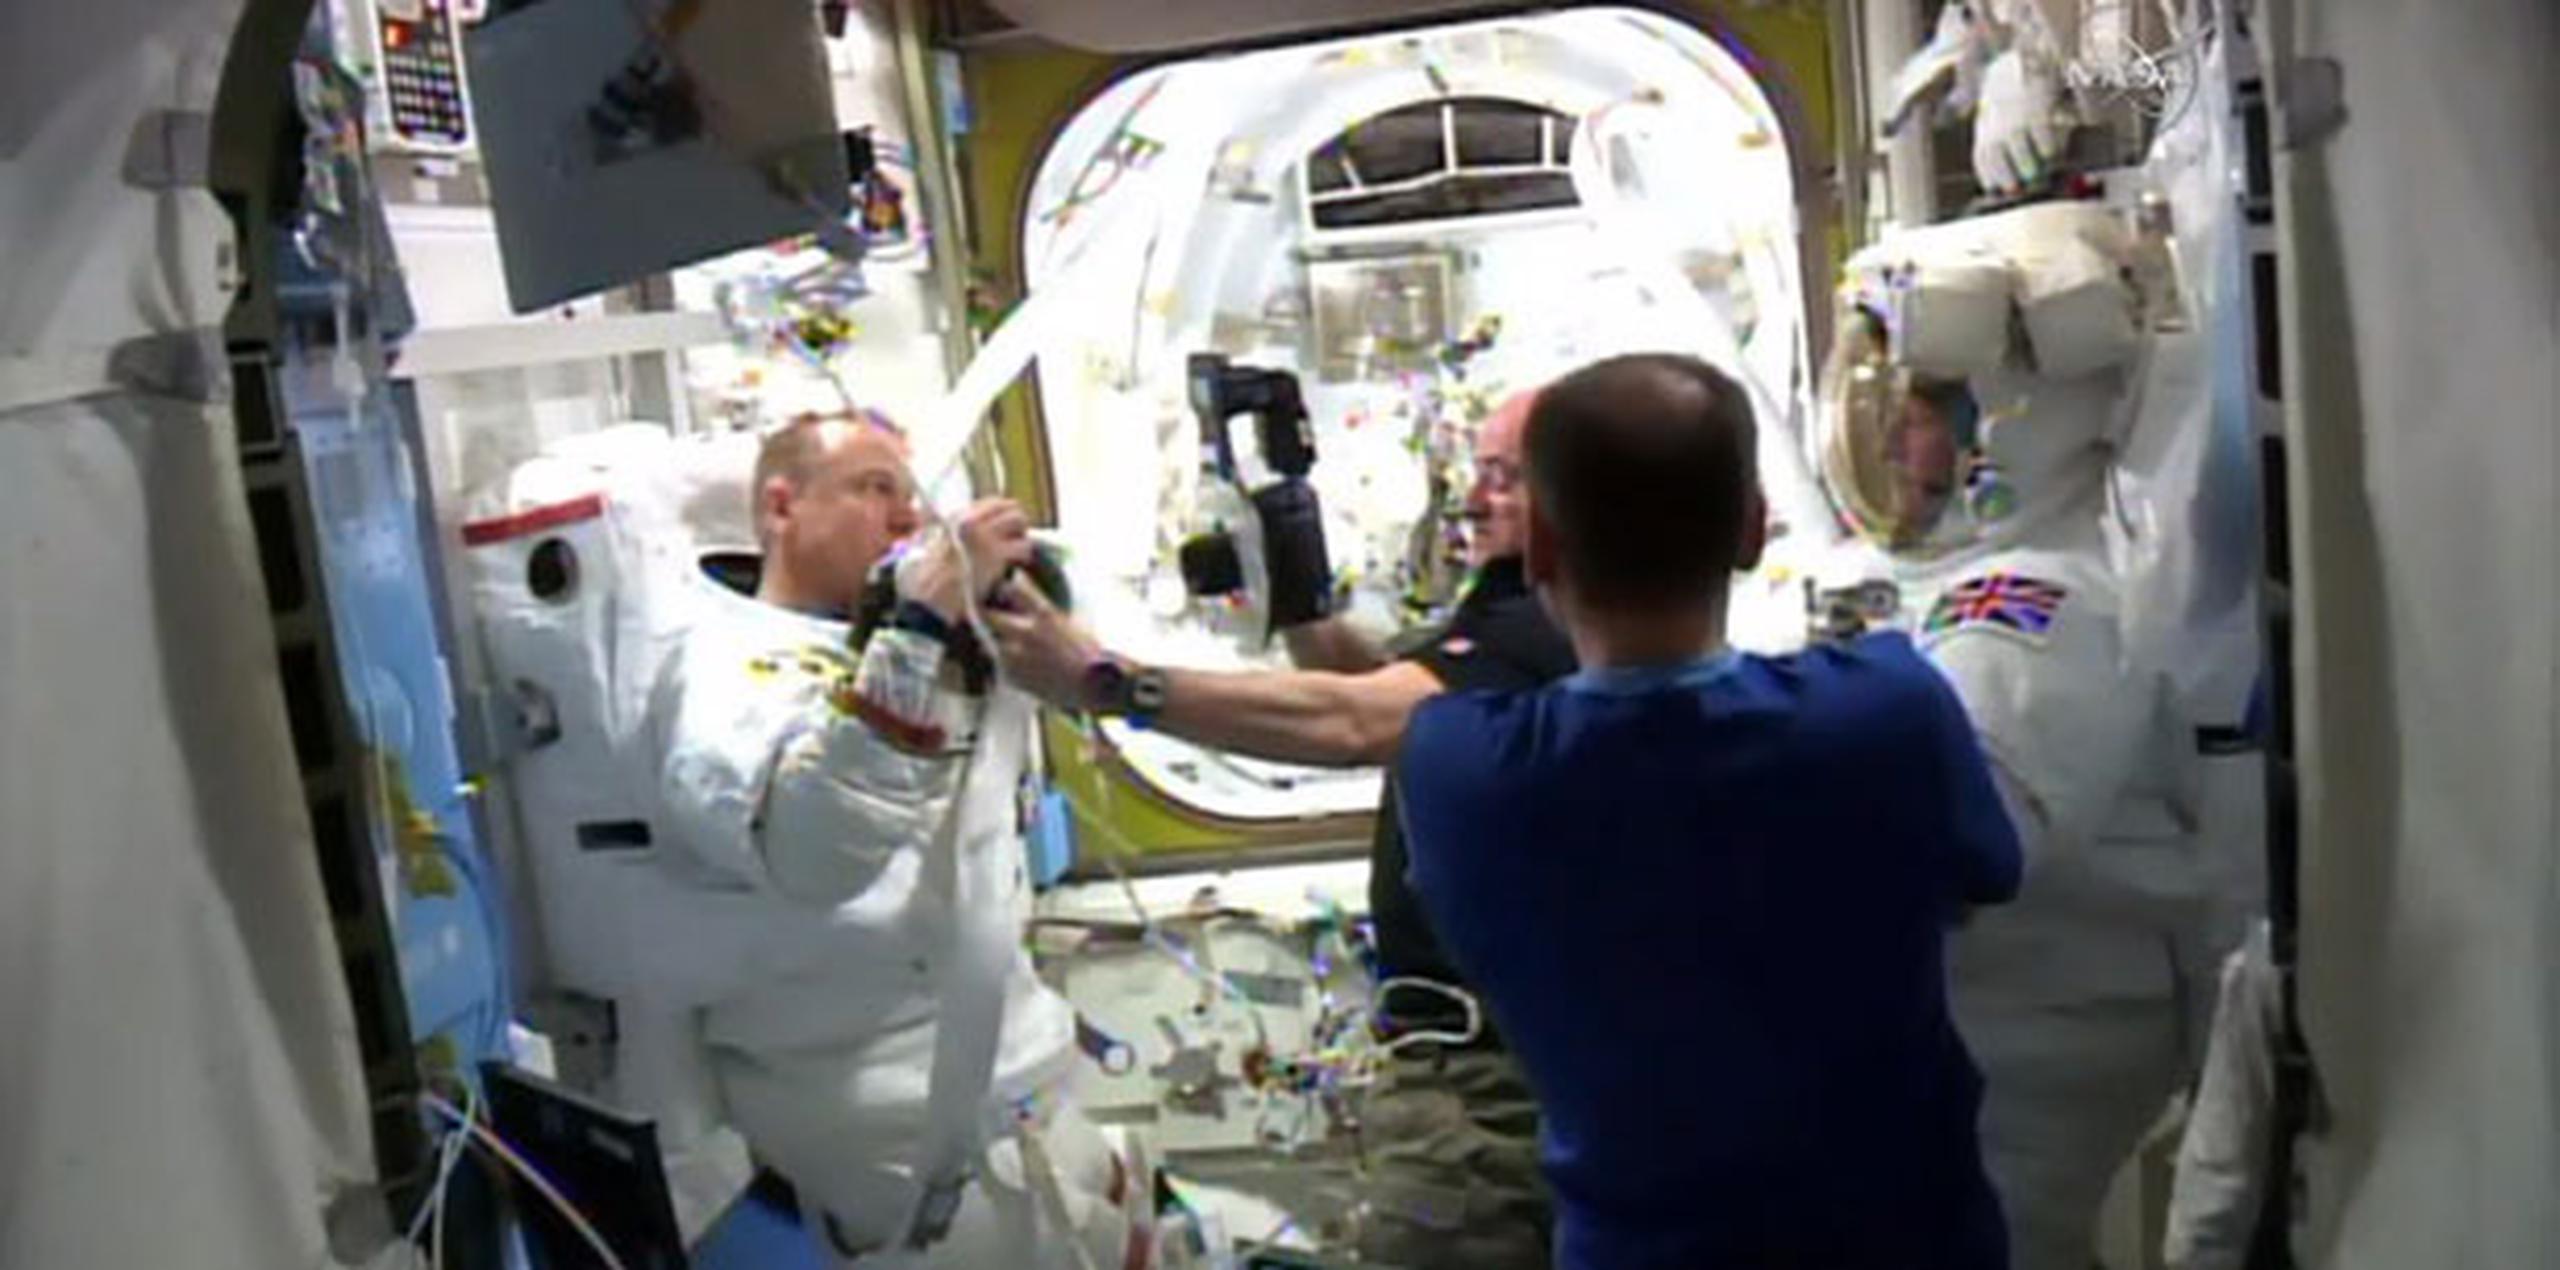 El astronauta estadounidense Timothy Kopra dijo que había agua en su casco. (NASA via AP)
